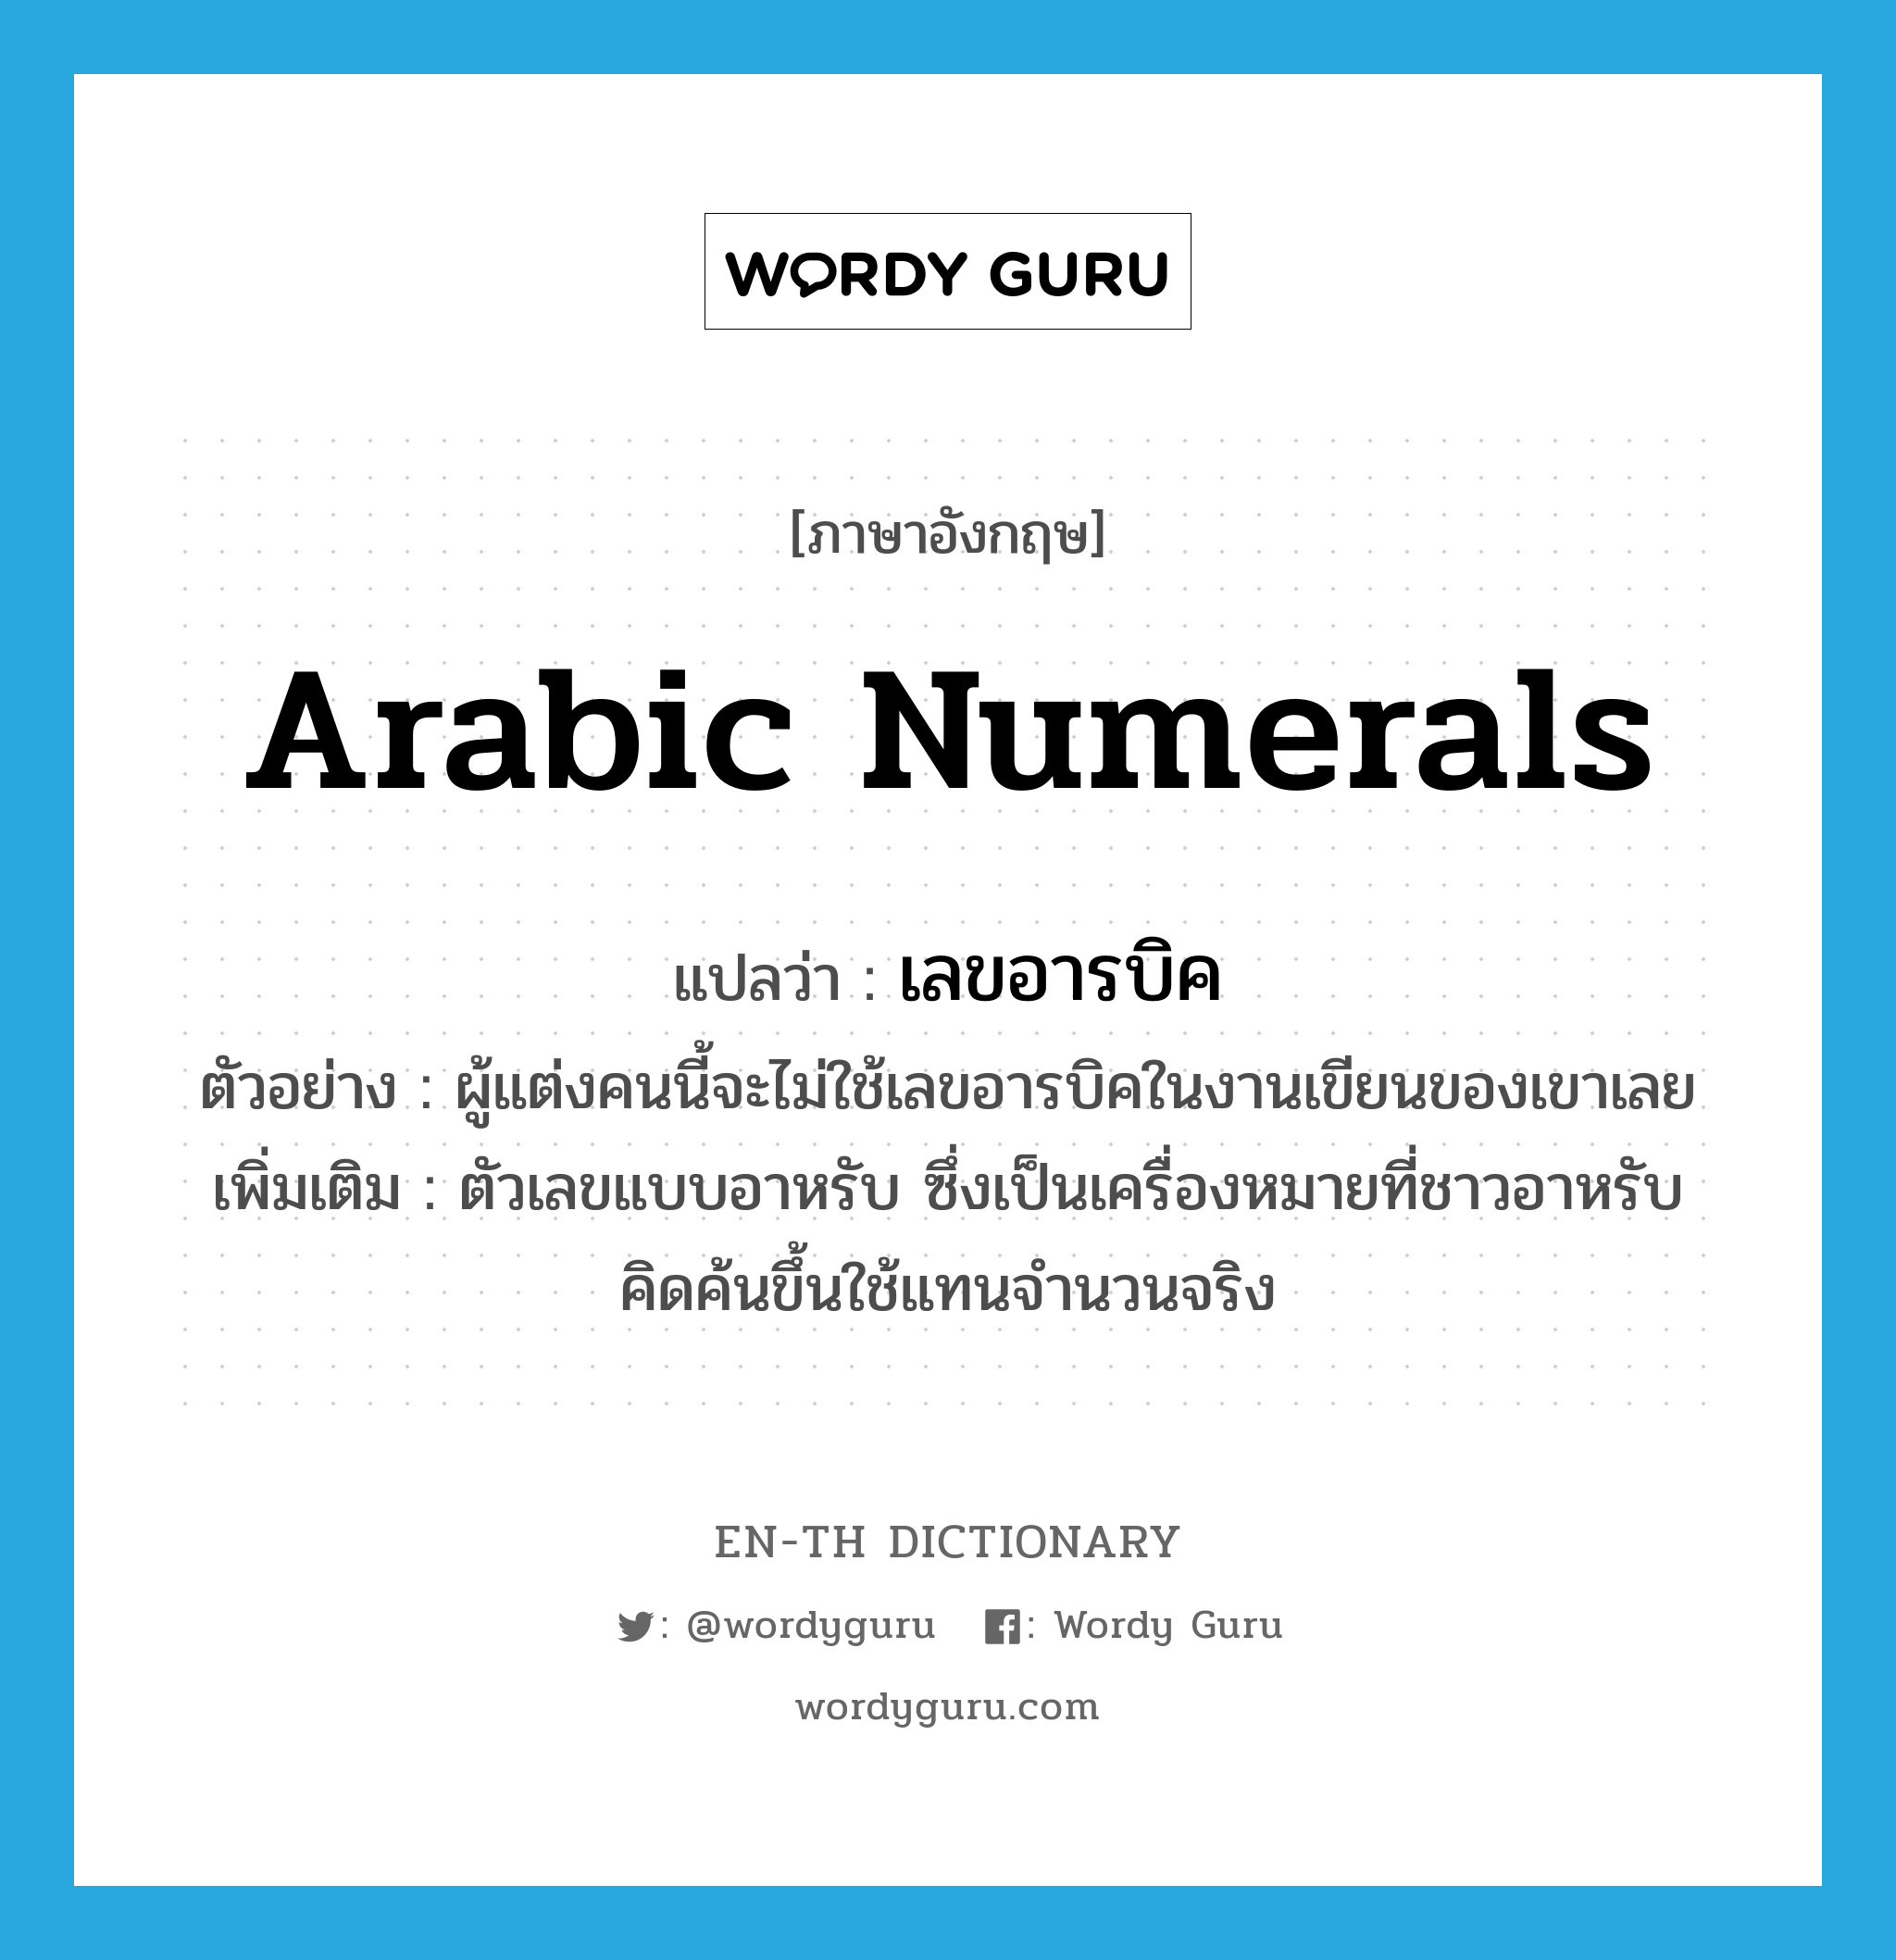 Arabic numerals แปลว่า?, คำศัพท์ภาษาอังกฤษ Arabic numerals แปลว่า เลขอารบิค ประเภท N ตัวอย่าง ผู้แต่งคนนี้จะไม่ใช้เลขอารบิคในงานเขียนของเขาเลย เพิ่มเติม ตัวเลขแบบอาหรับ ซึ่งเป็นเครื่องหมายที่ชาวอาหรับคิดค้นขึ้นใช้แทนจำนวนจริง หมวด N